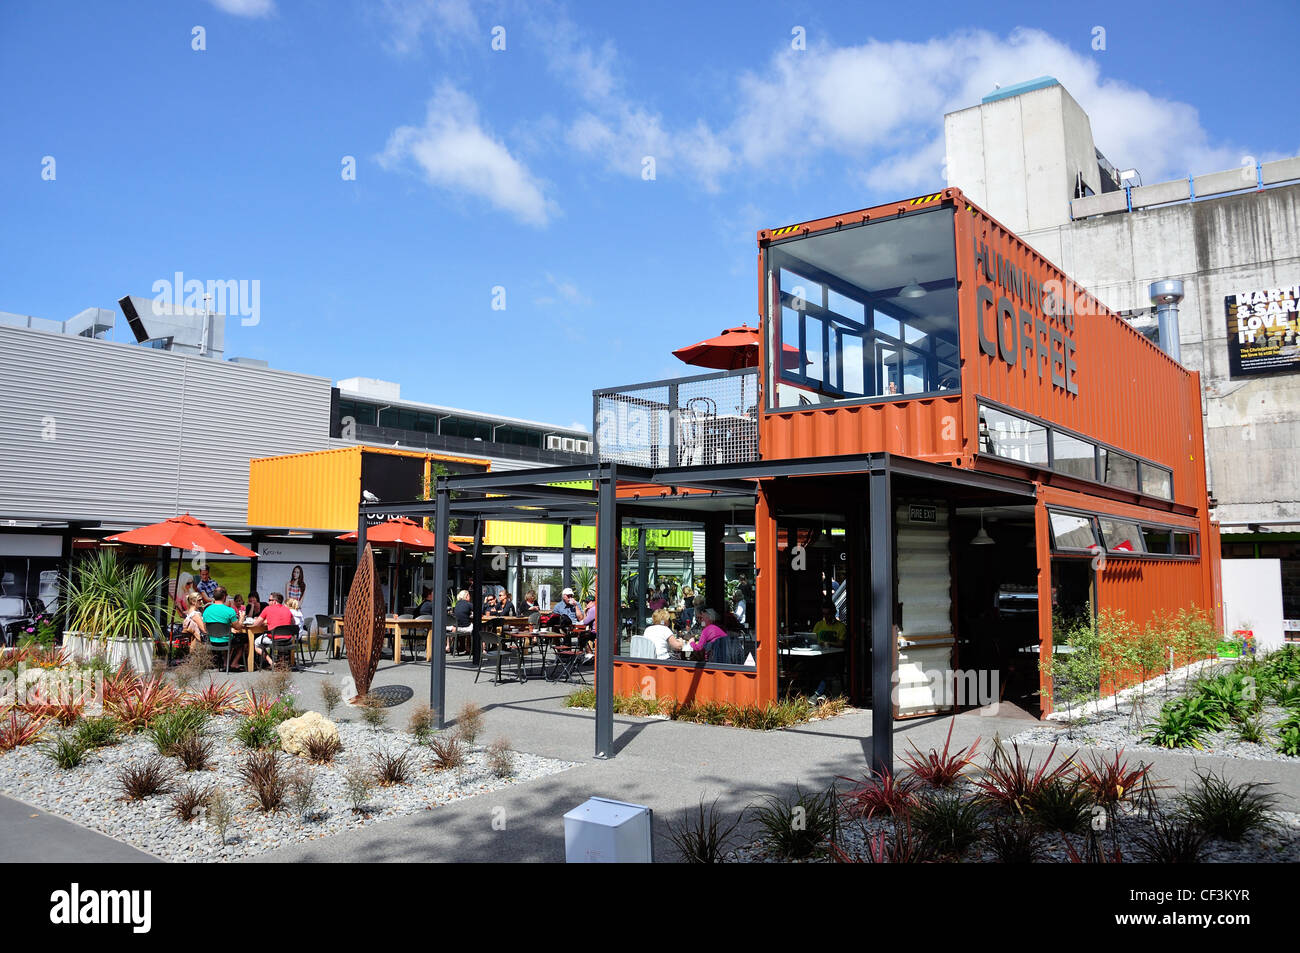 Re:iniciar contenedor ciudad construida después de los terremotos, Cashel Mall, el CDB, Christchurch, distrito de Canterbury, Nueva Zelanda Foto de stock